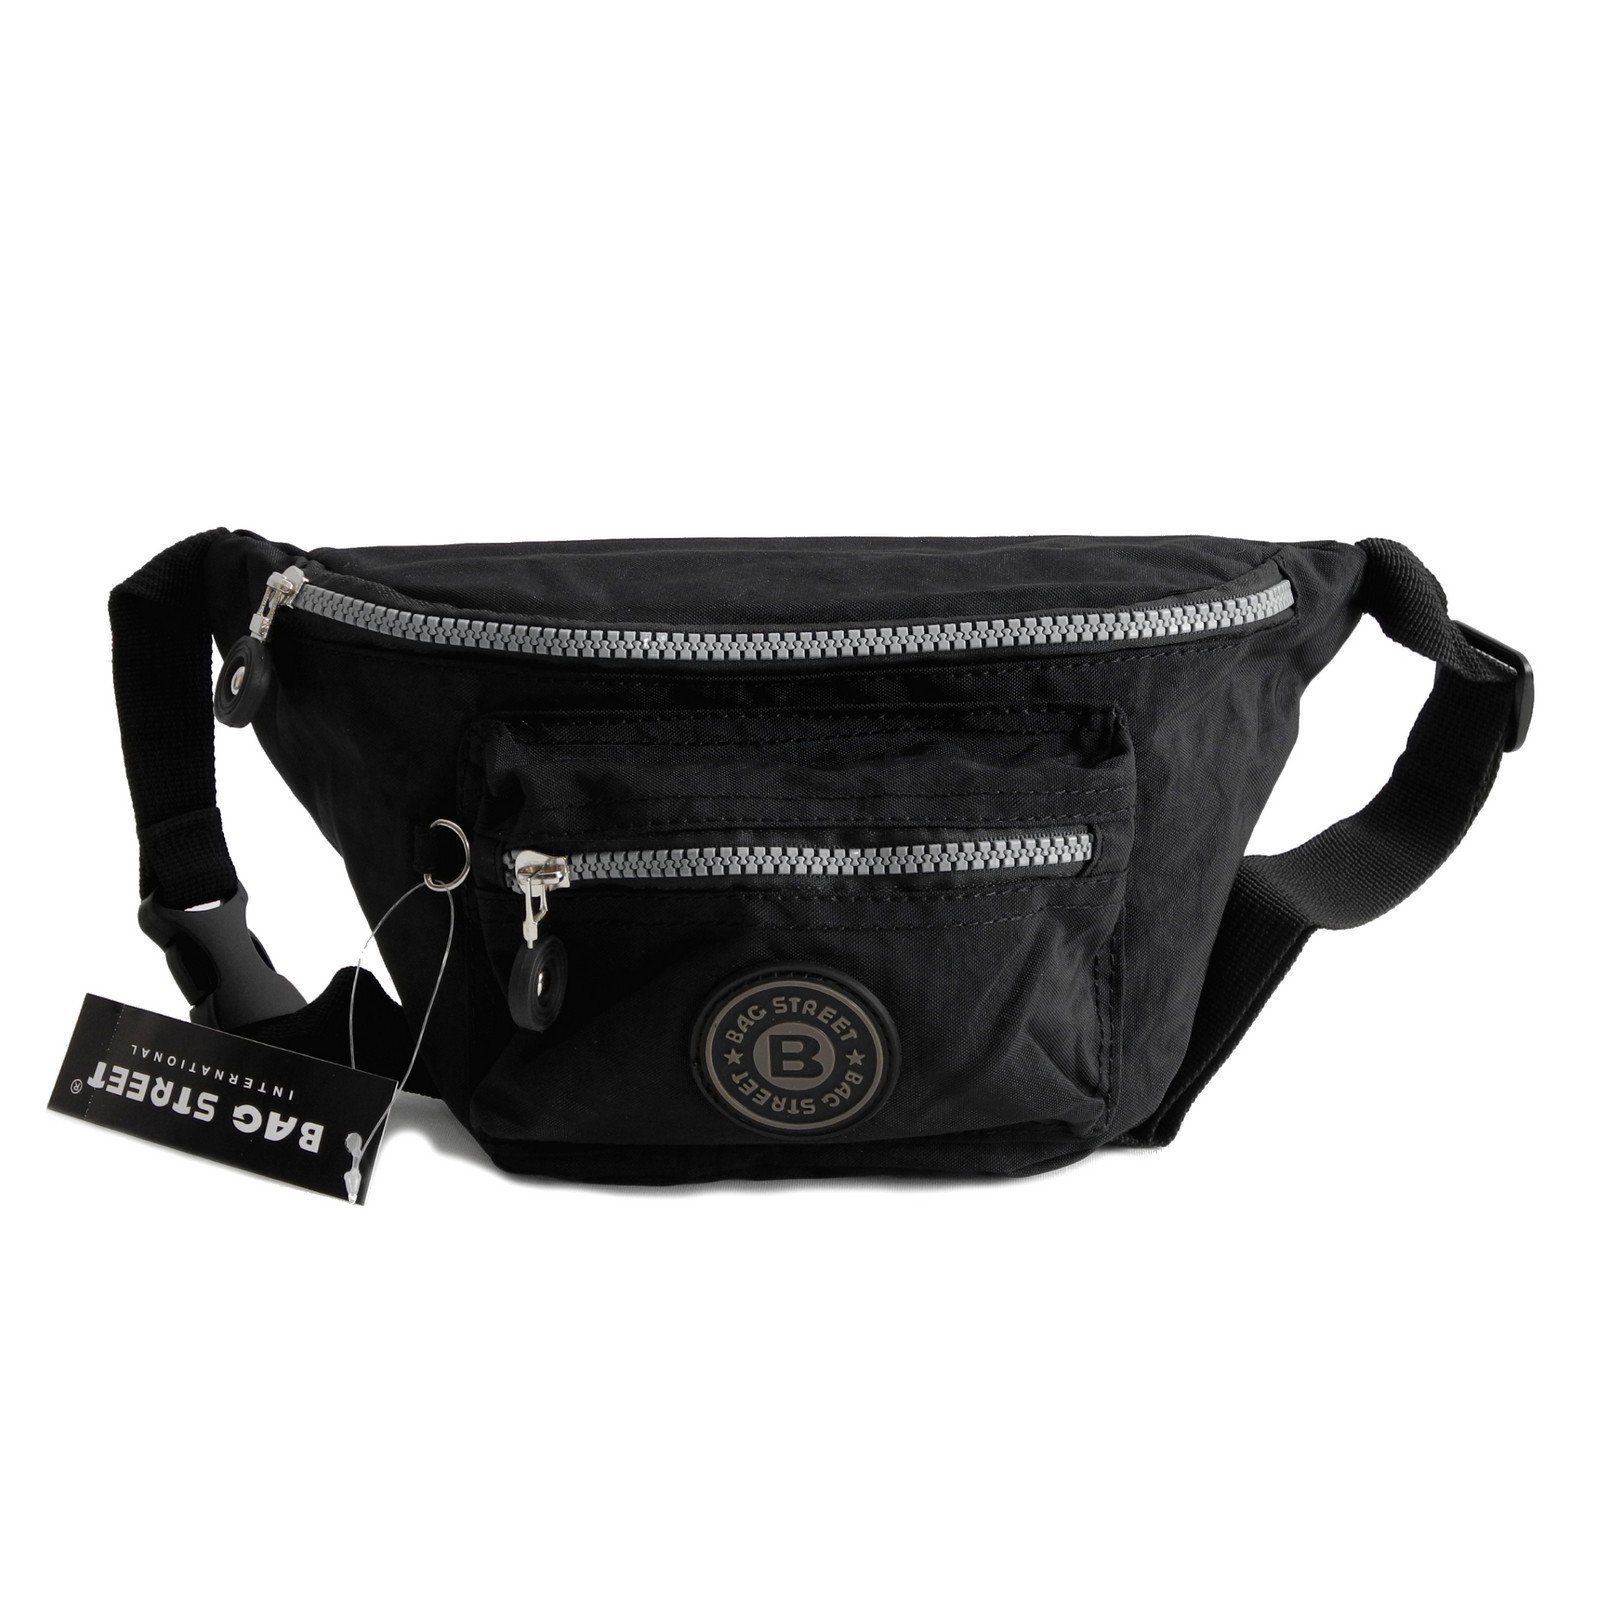 2er Pack Tasche für den Gürtel Hüfttasche Tasche schwarz Gürteltasche Taschen 